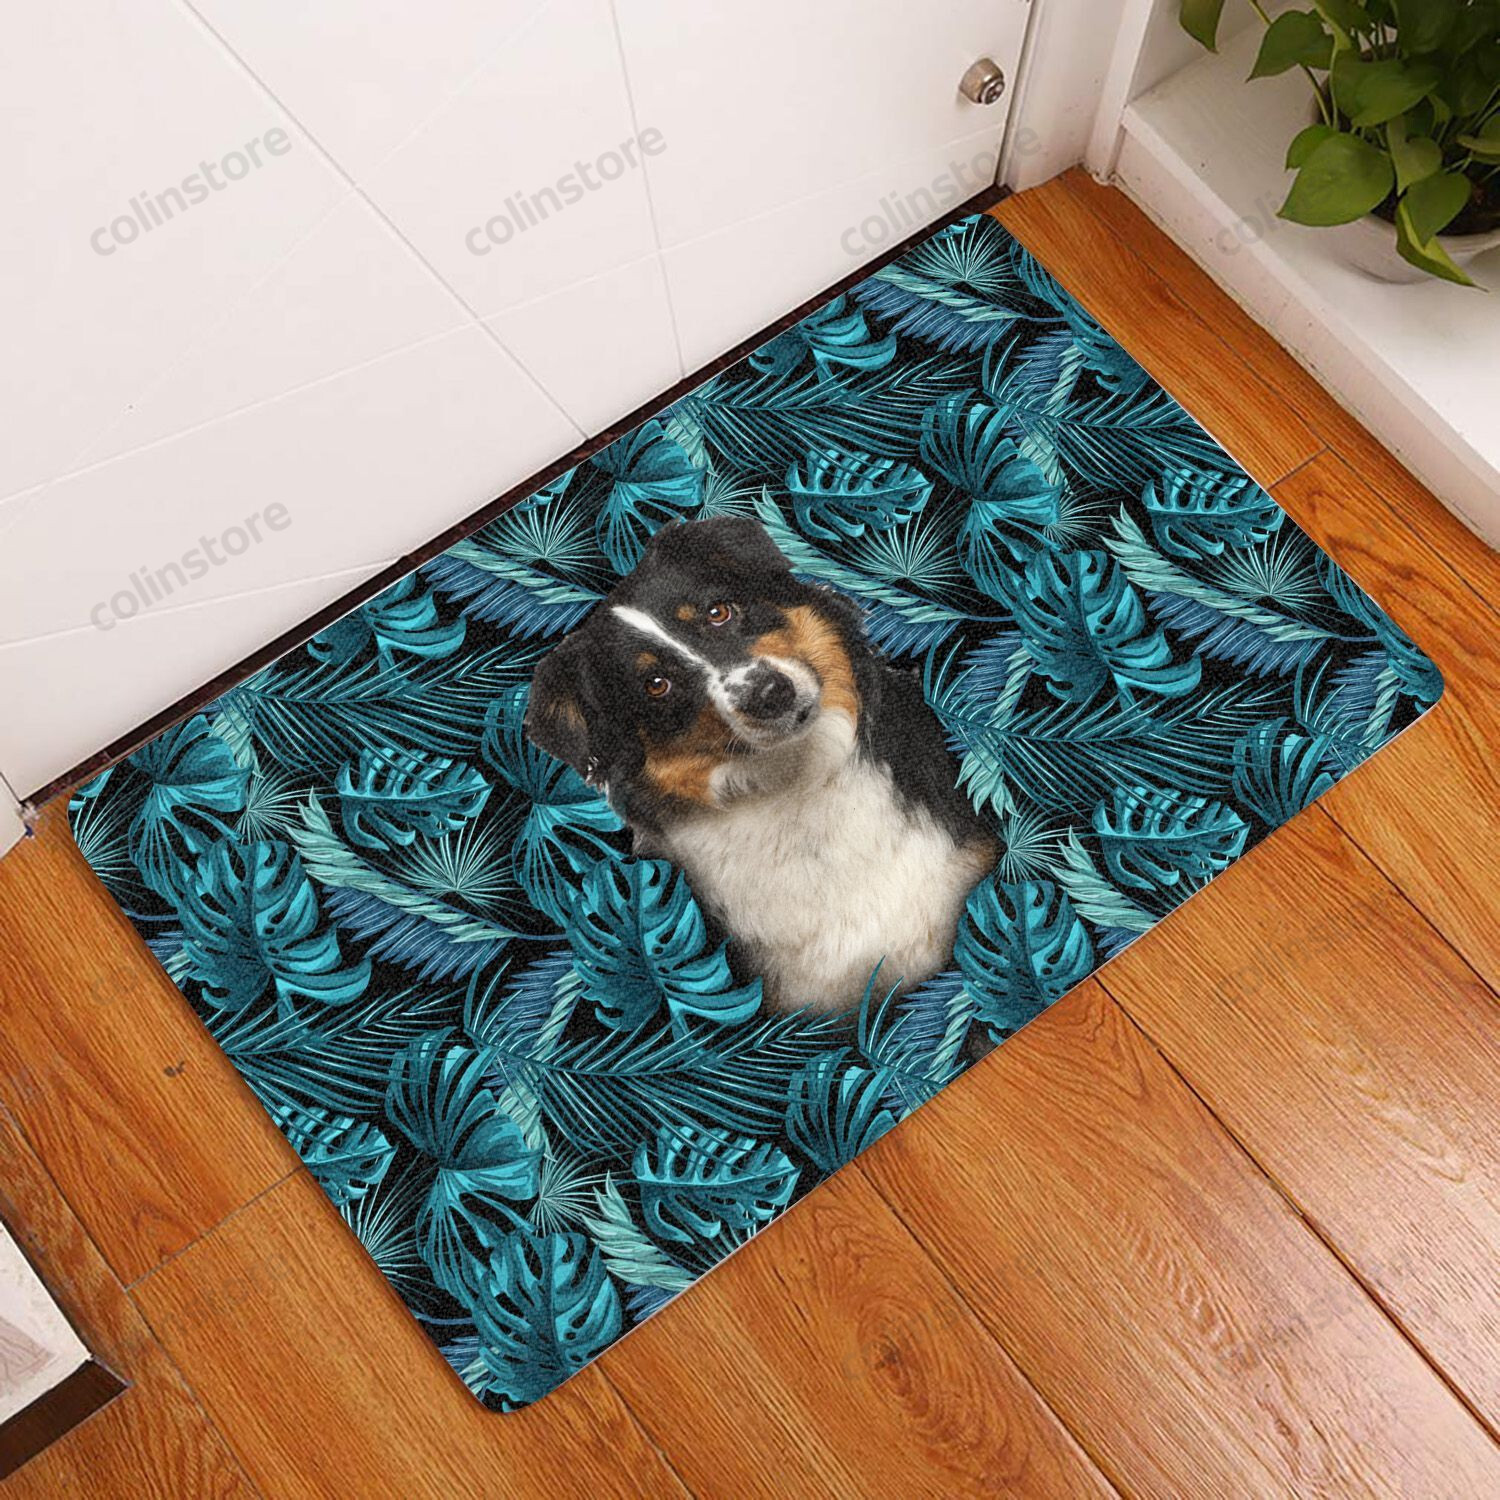 Amazing Miniature Australian Shepherd - Dog Doormat Welcome Mat